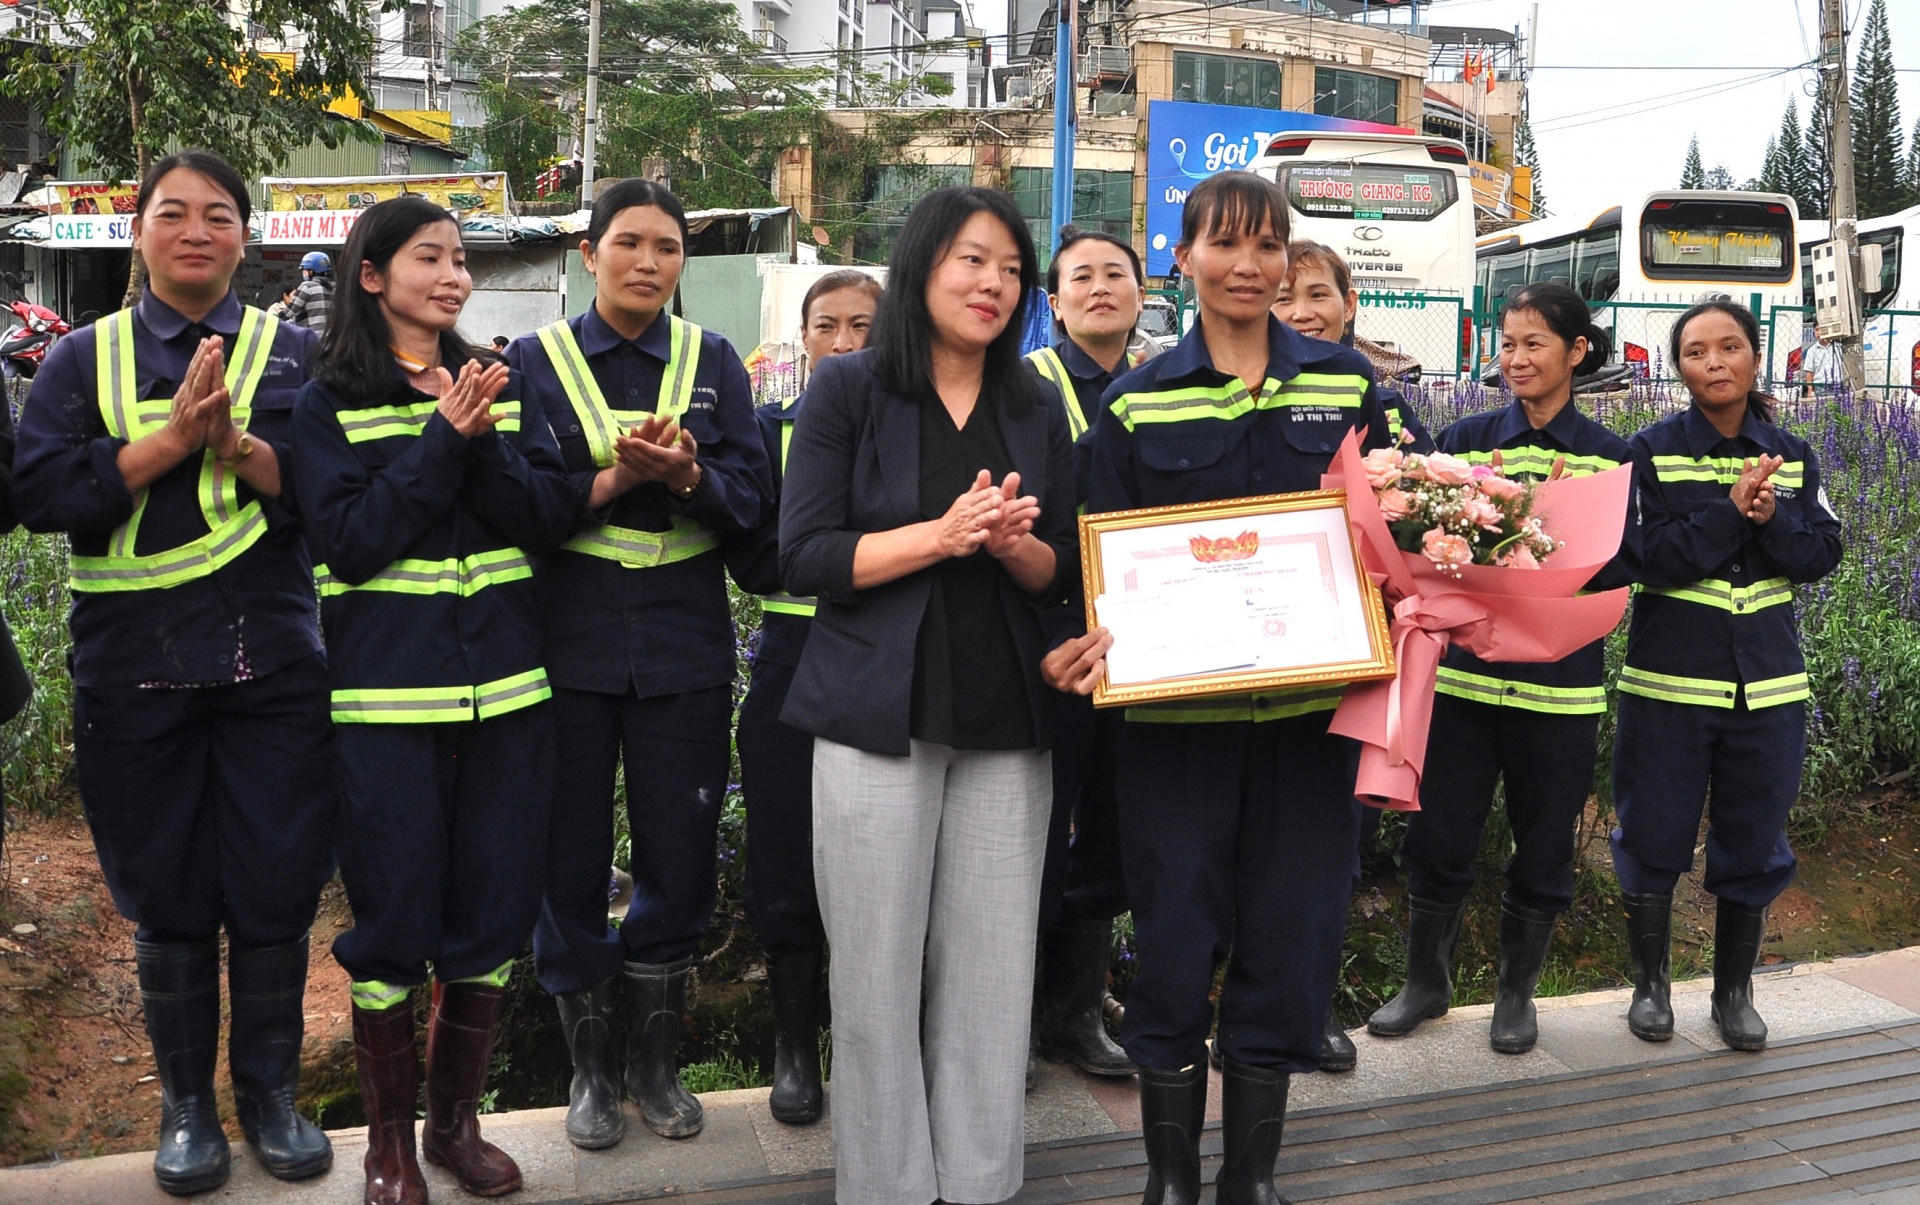 Đà Lạt: Khen thưởng nữ công nhân môi trường nhặt được 4.700 USD trả lại người để quên